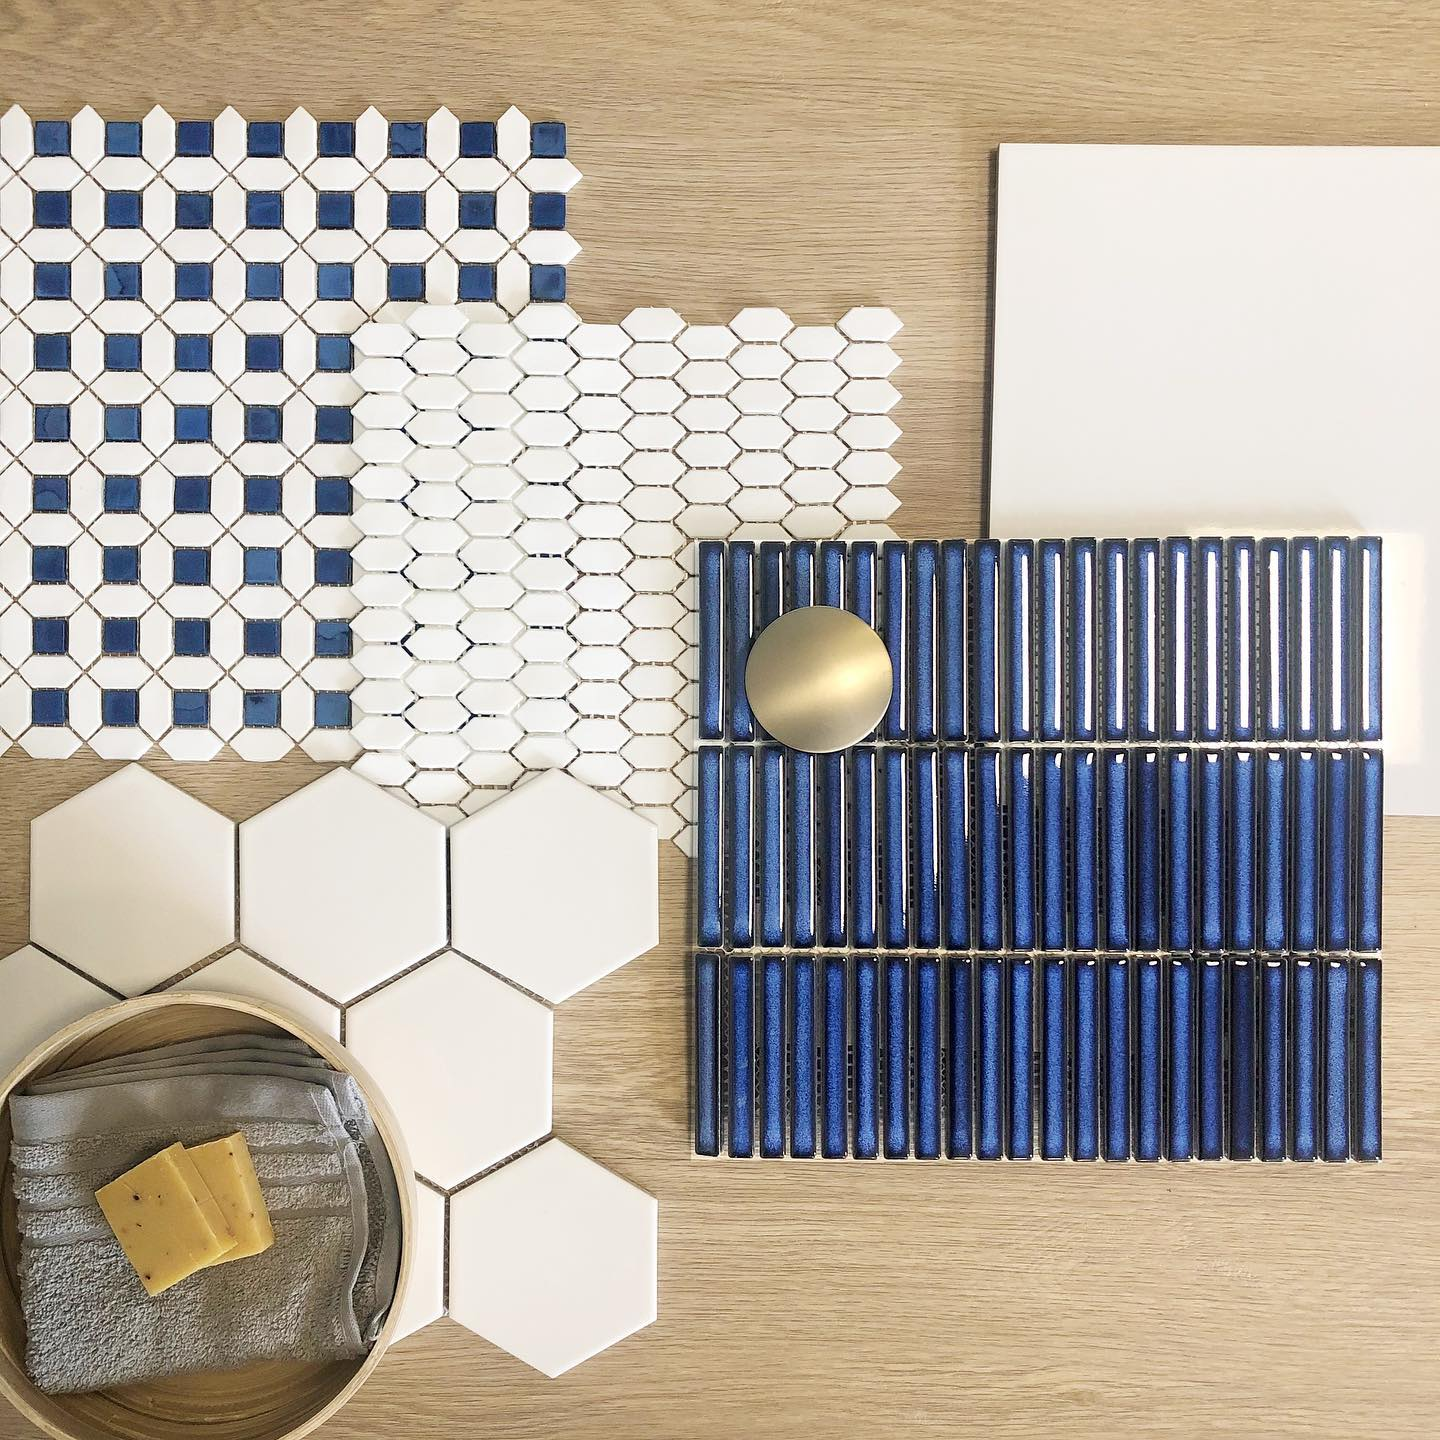 Carrelage uni blanc et bleu, hexagones et rectangles, présentation sur bois avec accessoires